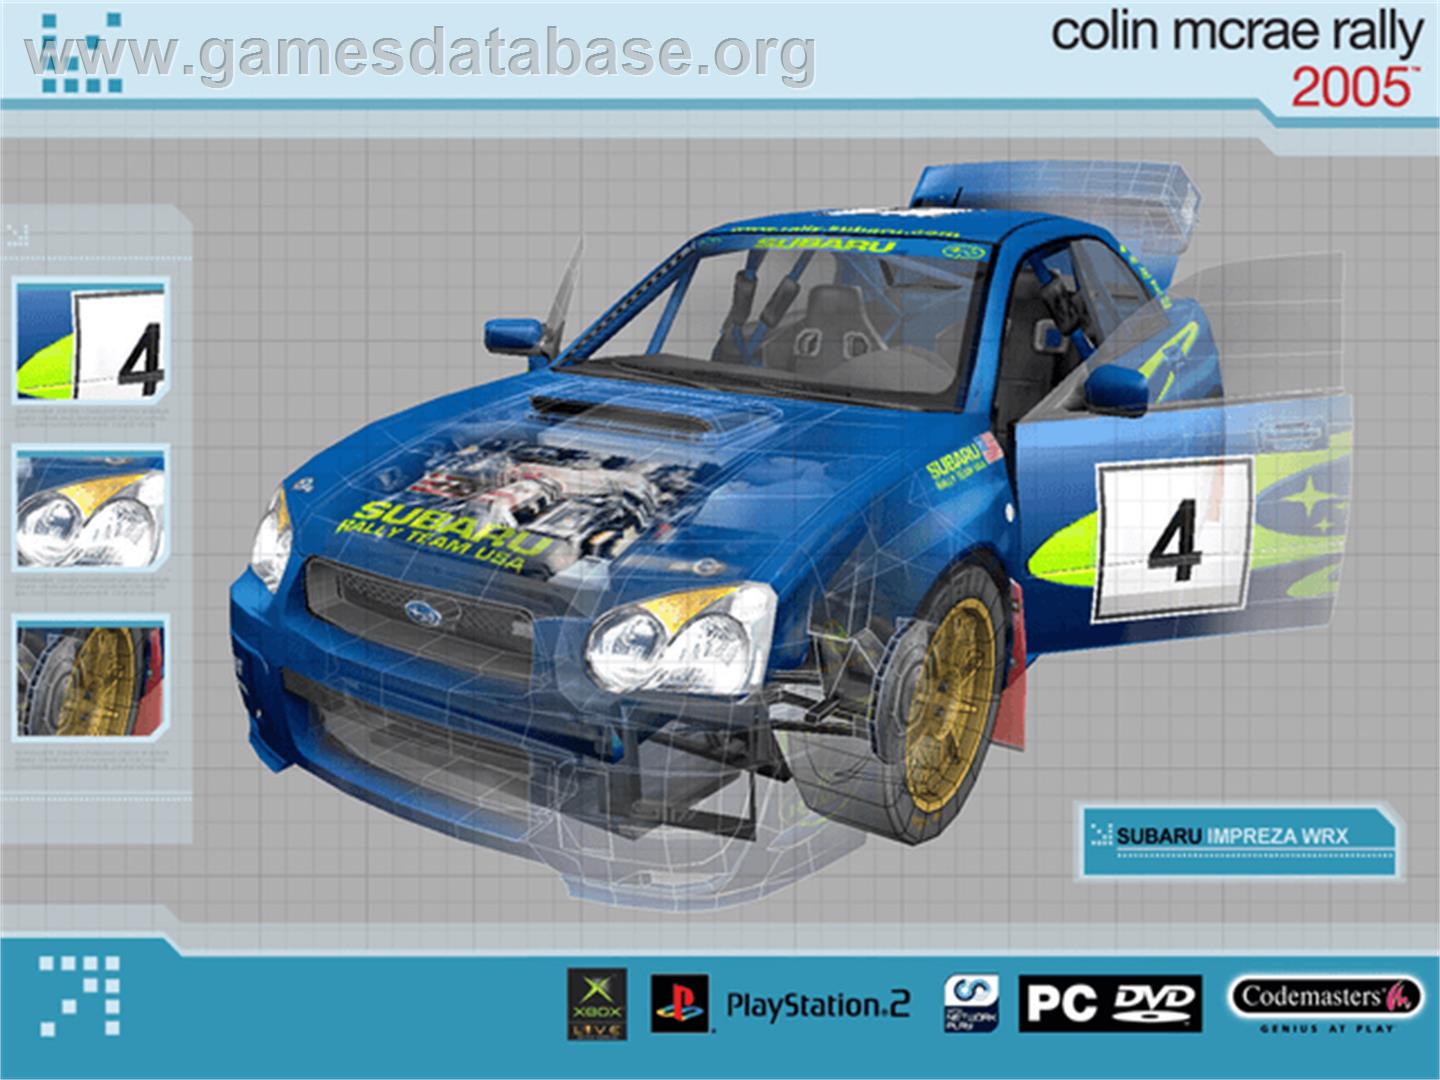 Colin McRae Rally 2005 - Microsoft Xbox - Artwork - Title Screen